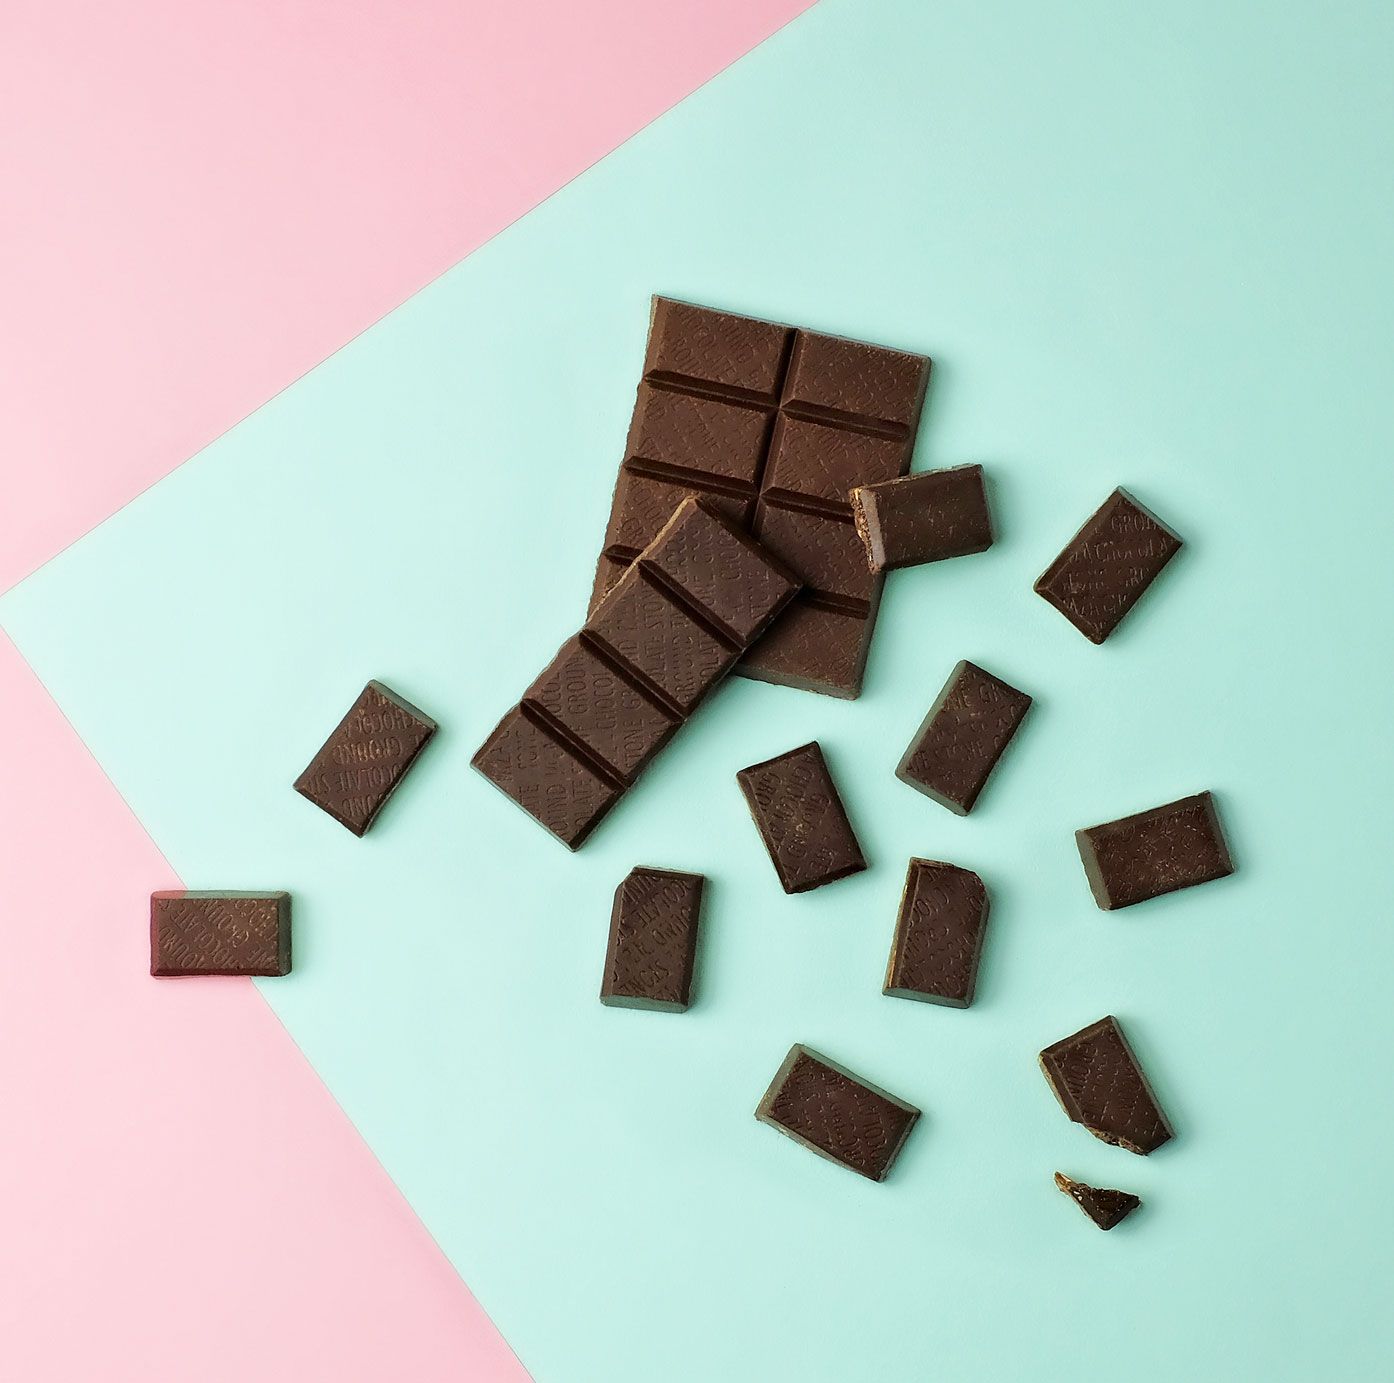 Dunkle Schokolade selber machen: Vegan und laktosefrei